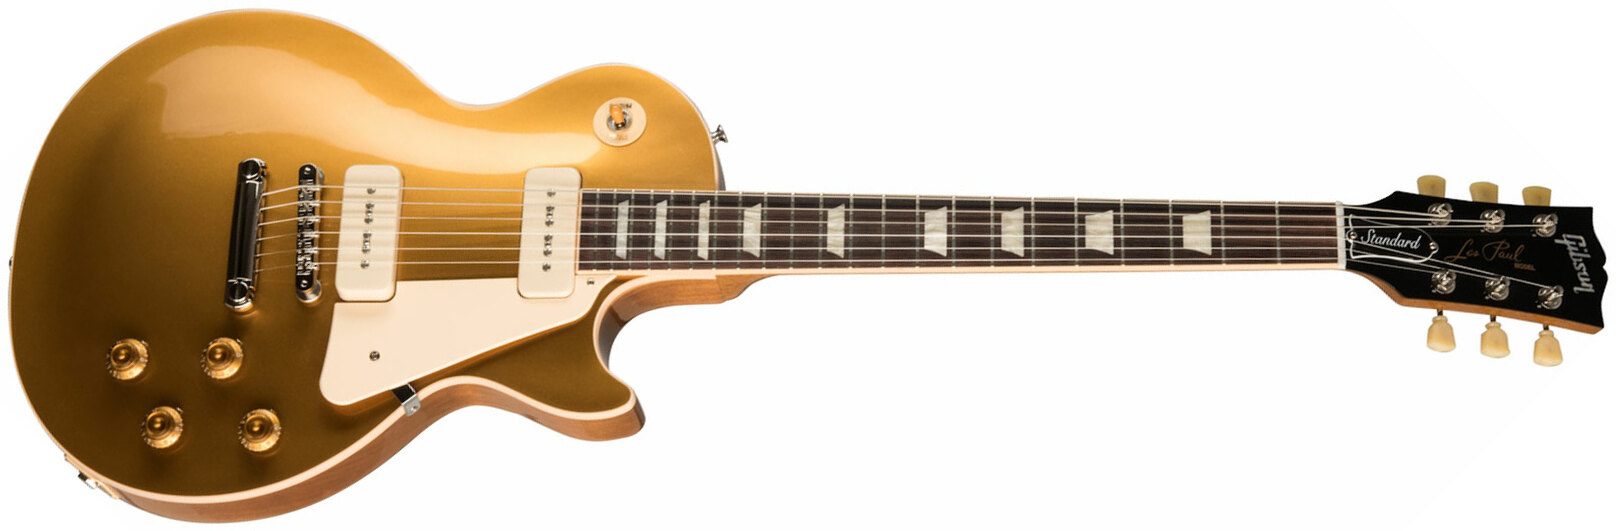 Gibson Les Paul Standard 50s P90 Original 2p90 Ht Rw - Gold Top - Guitarra eléctrica de corte único. - Main picture